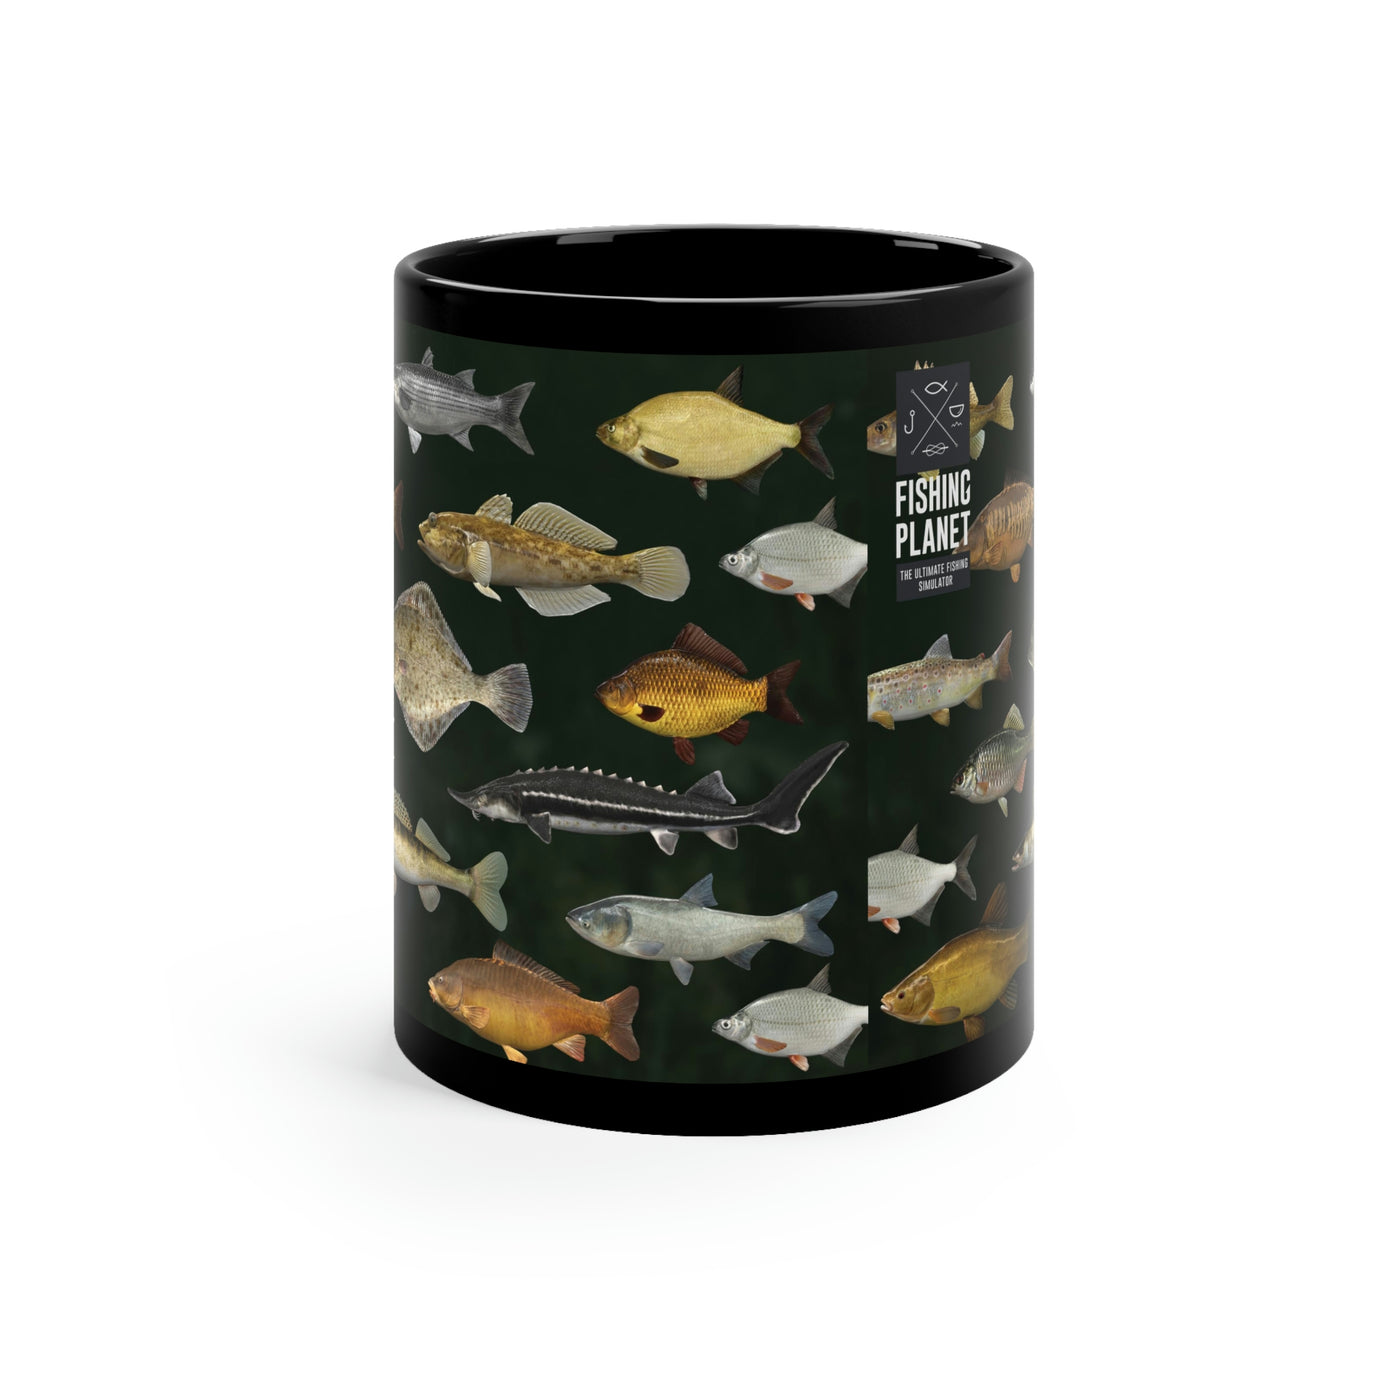 Fishing Planet Fishes Black Mug (US shipping)